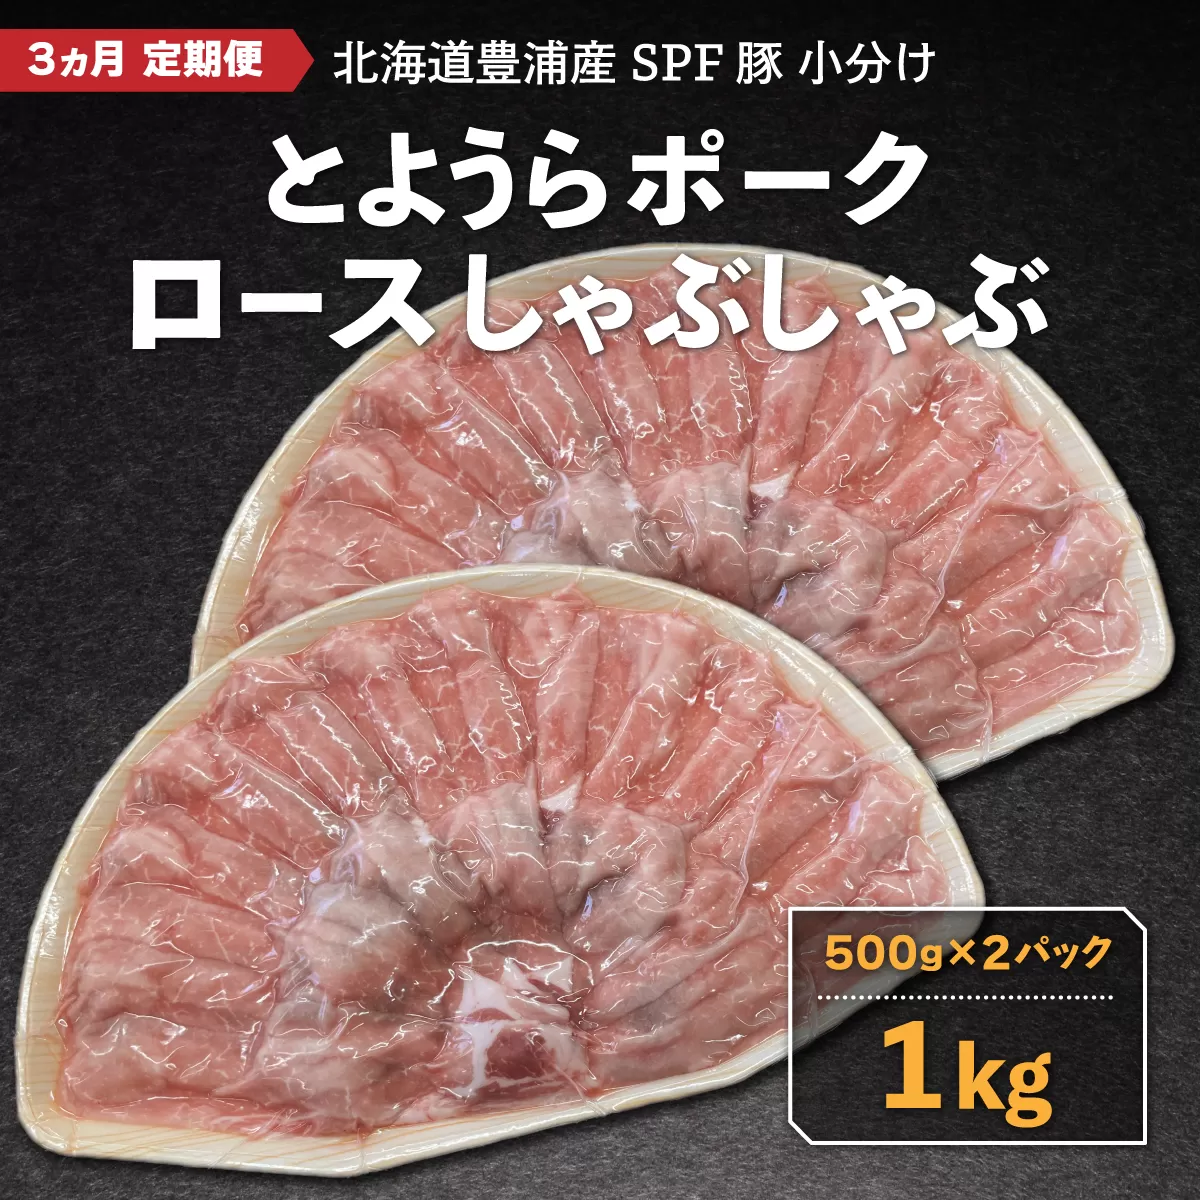 【3ヵ月 定期便 】 豚肉 しゃぶしゃぶ とようらポーク 1kg ロース 豚しゃぶ 北海道 豊浦産 SPF豚 TYUO035